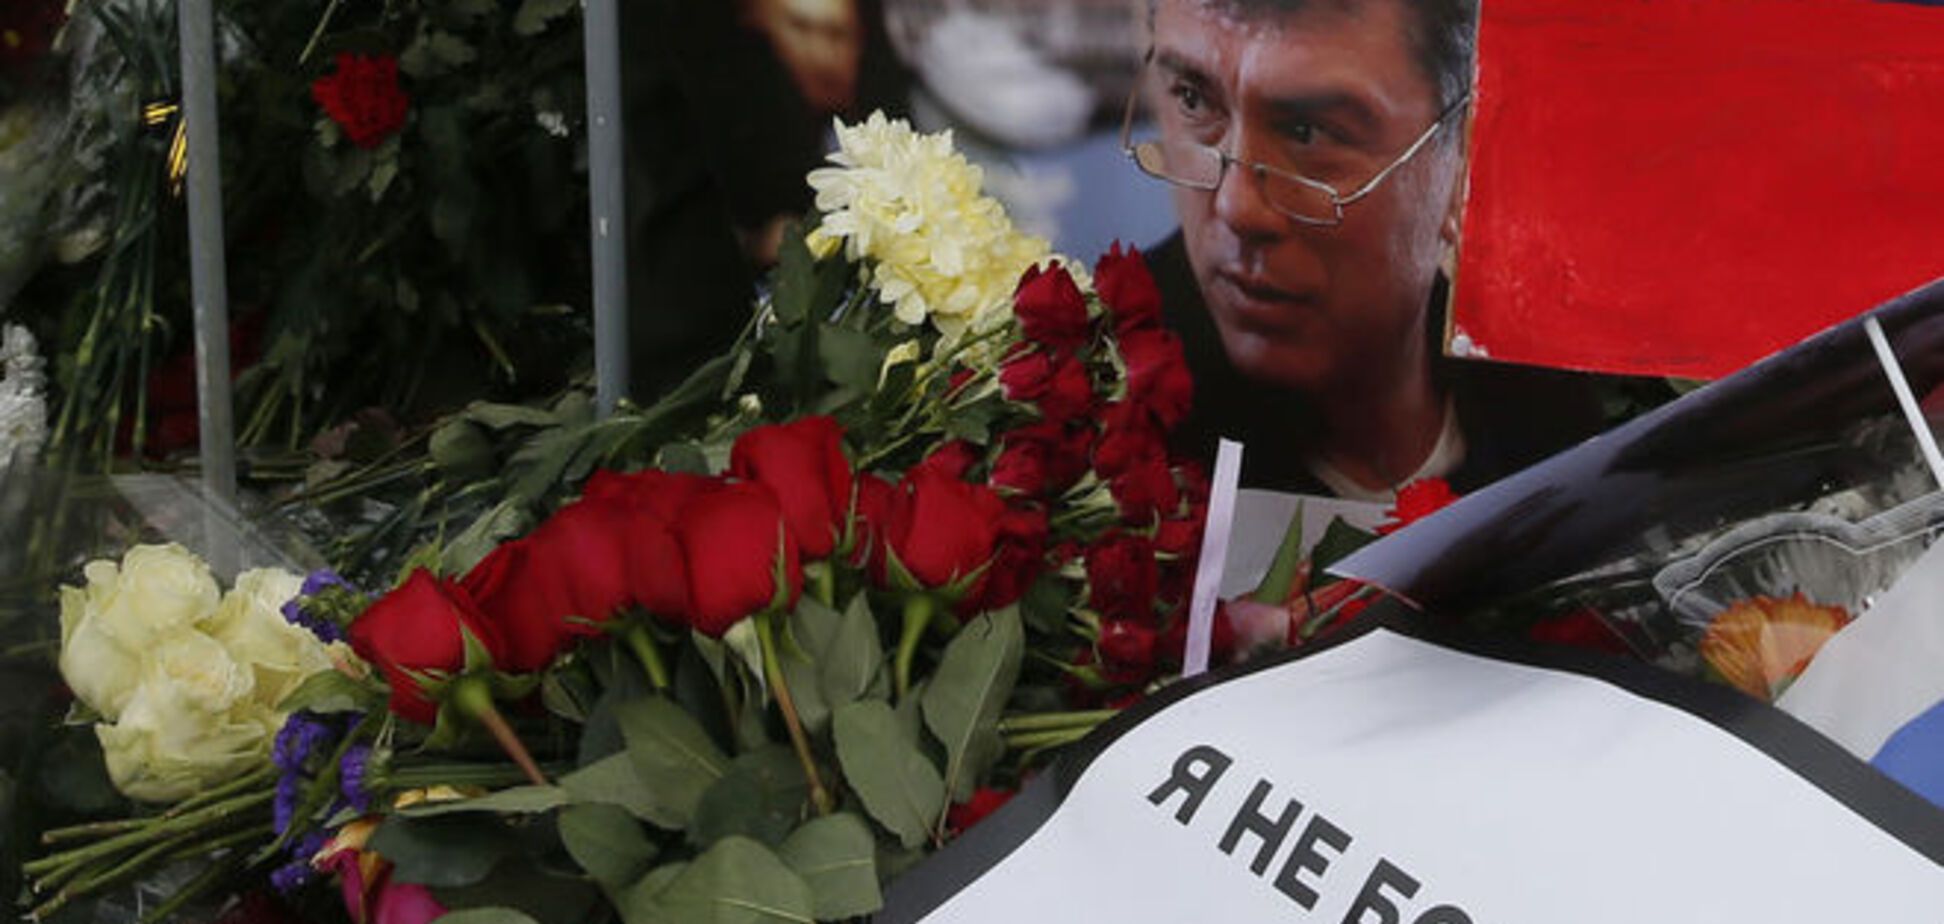 Путину доложили о 'расстрельном списке' российских оппозиционеров и назвали имя организатора убийства Немцова - СМИ